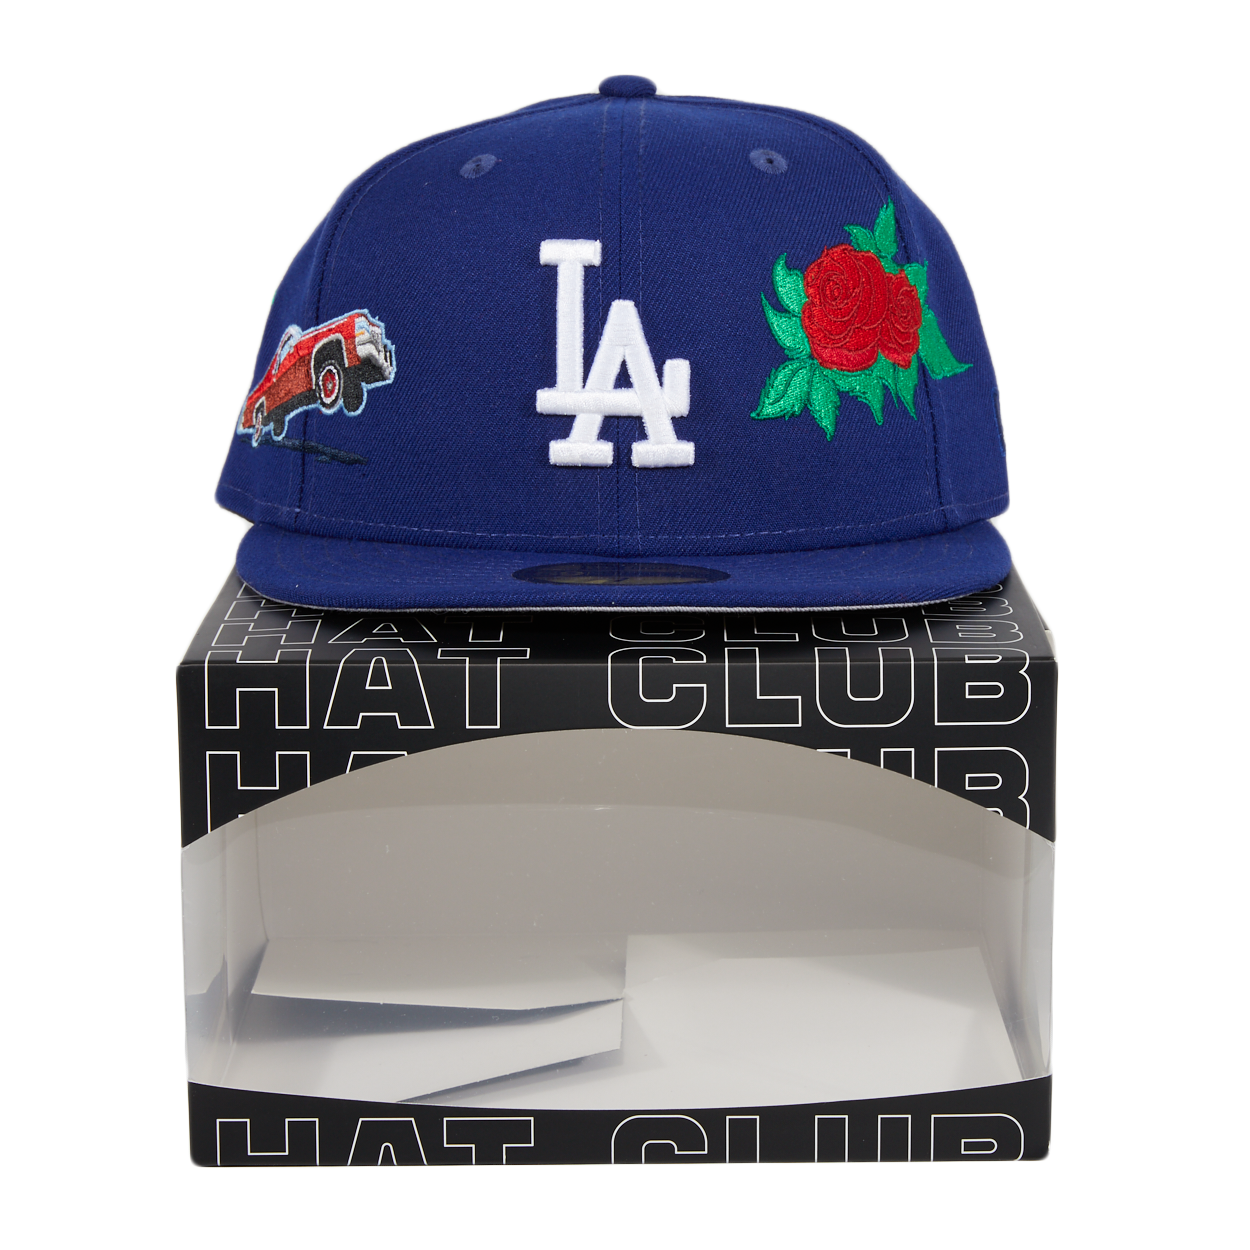 Hat Club Display Box – hatclub789.com